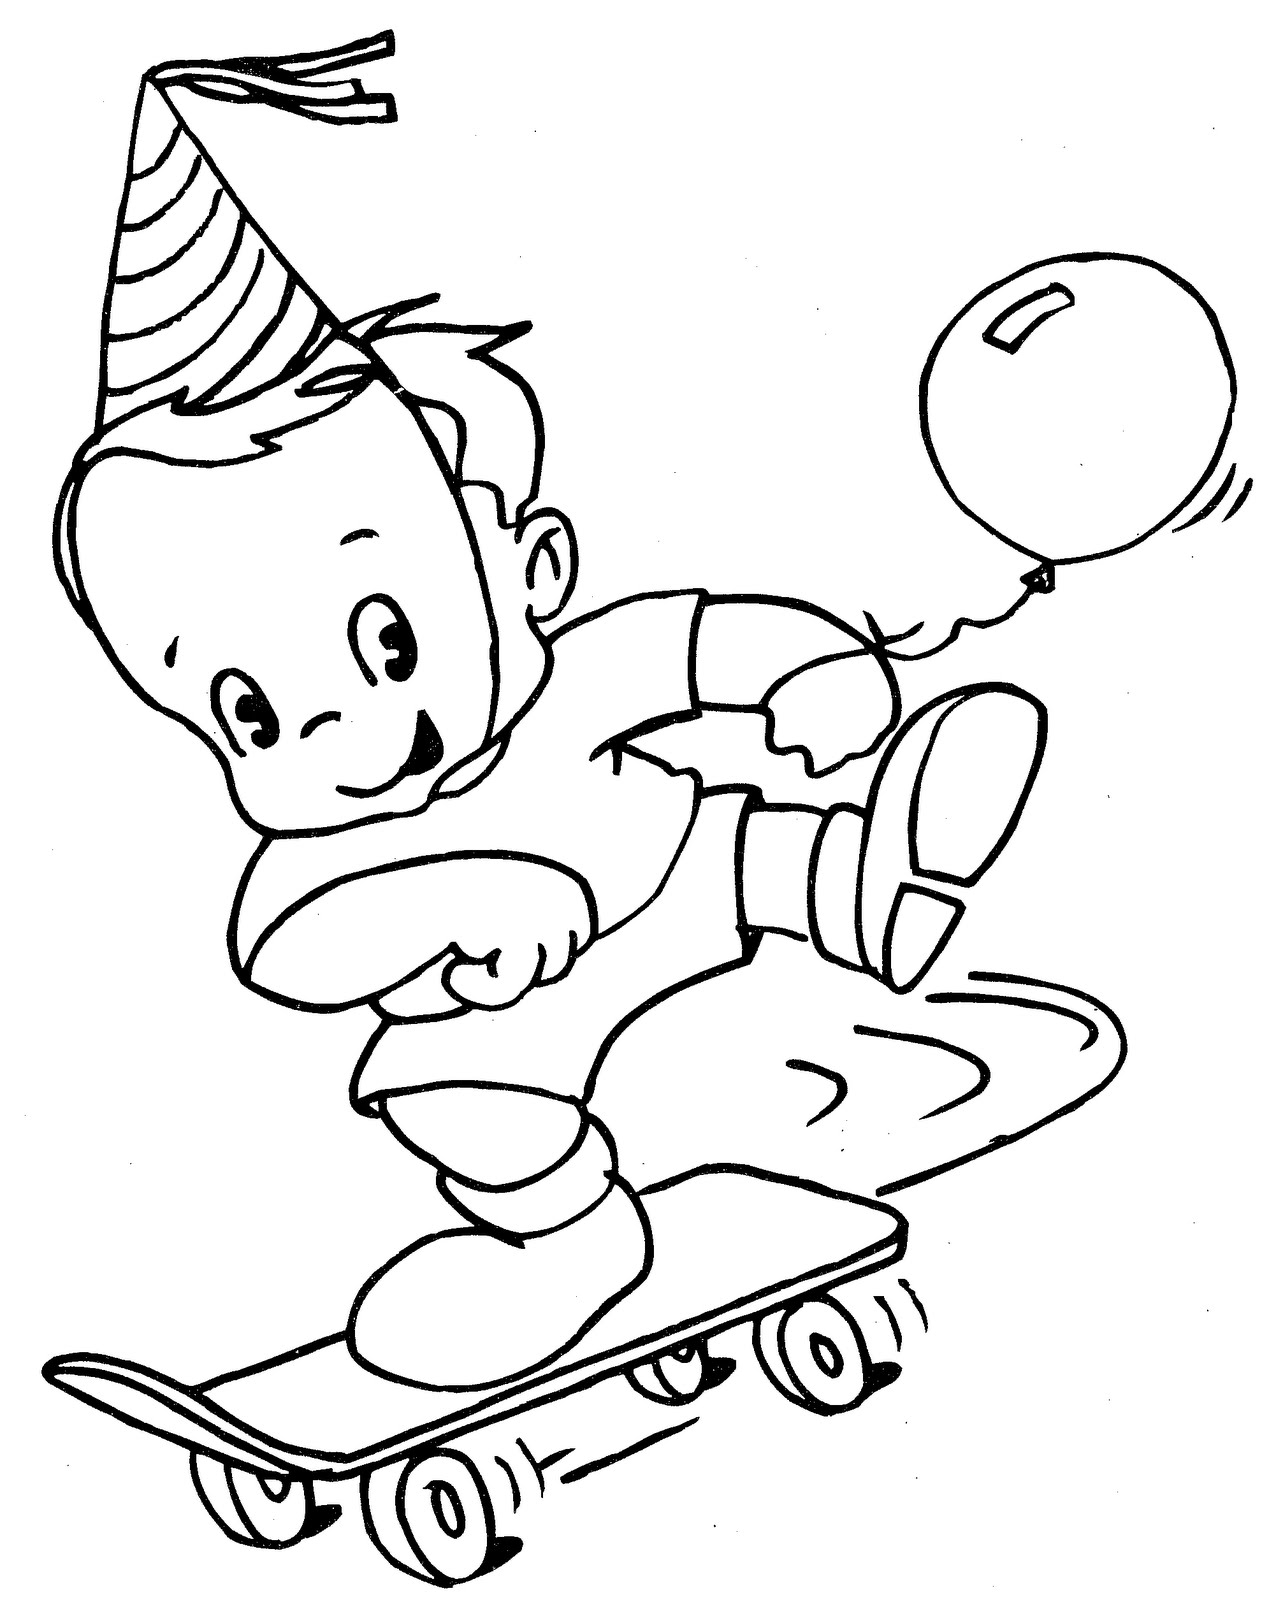 為孩子們的著色頁: boy with skateboard - free coloring pages